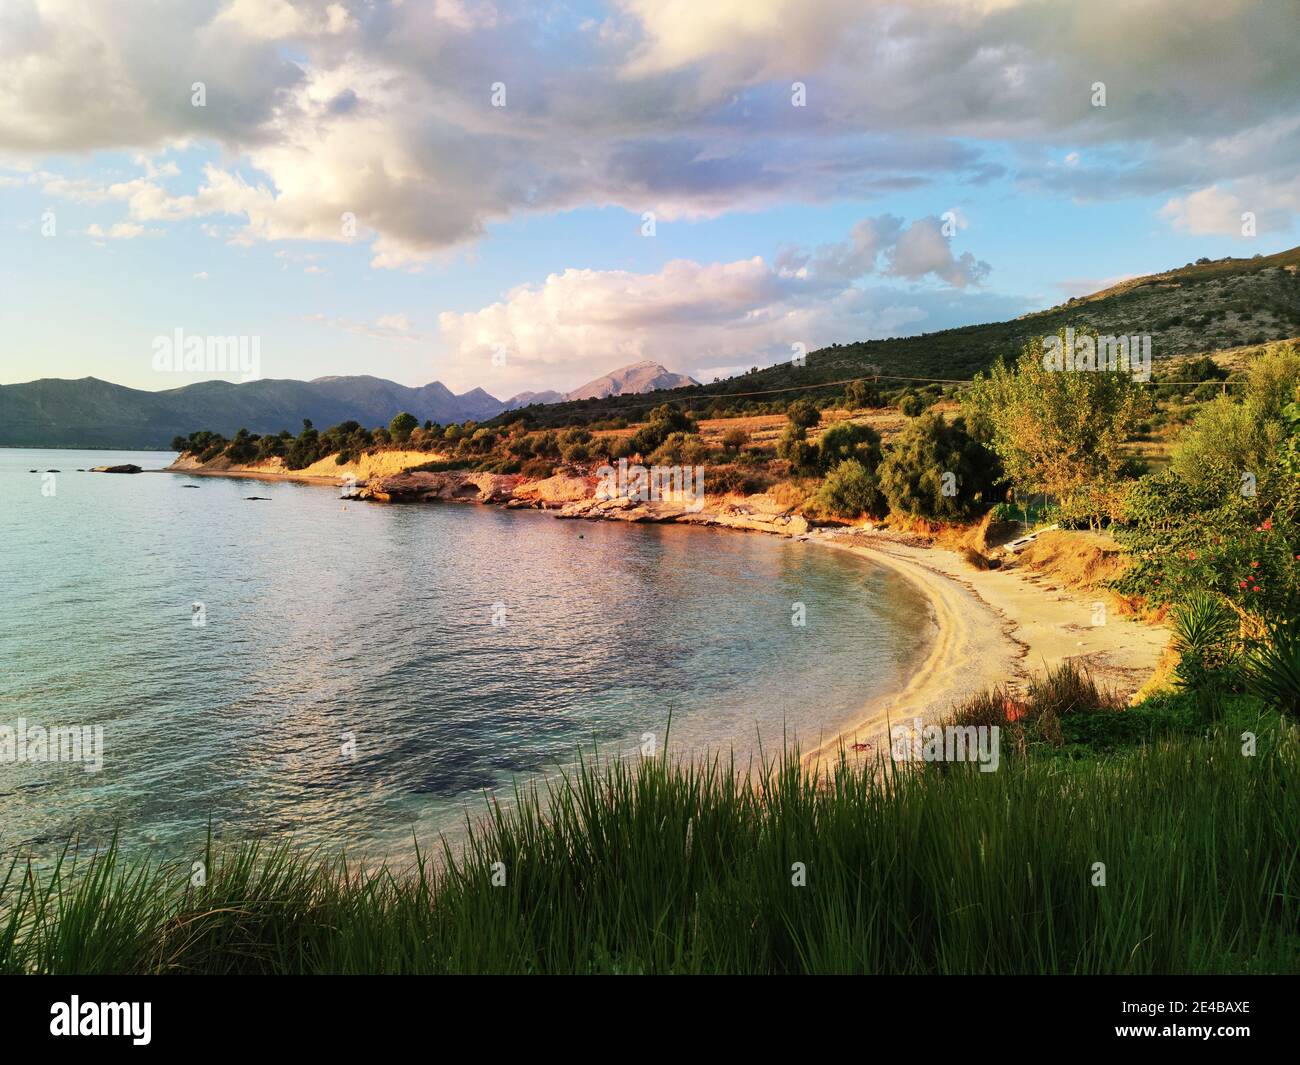 Bucht am Festland im Sund der Insel Kalamos, Ionisches Meer, Mittelgriechenland Stock Photo